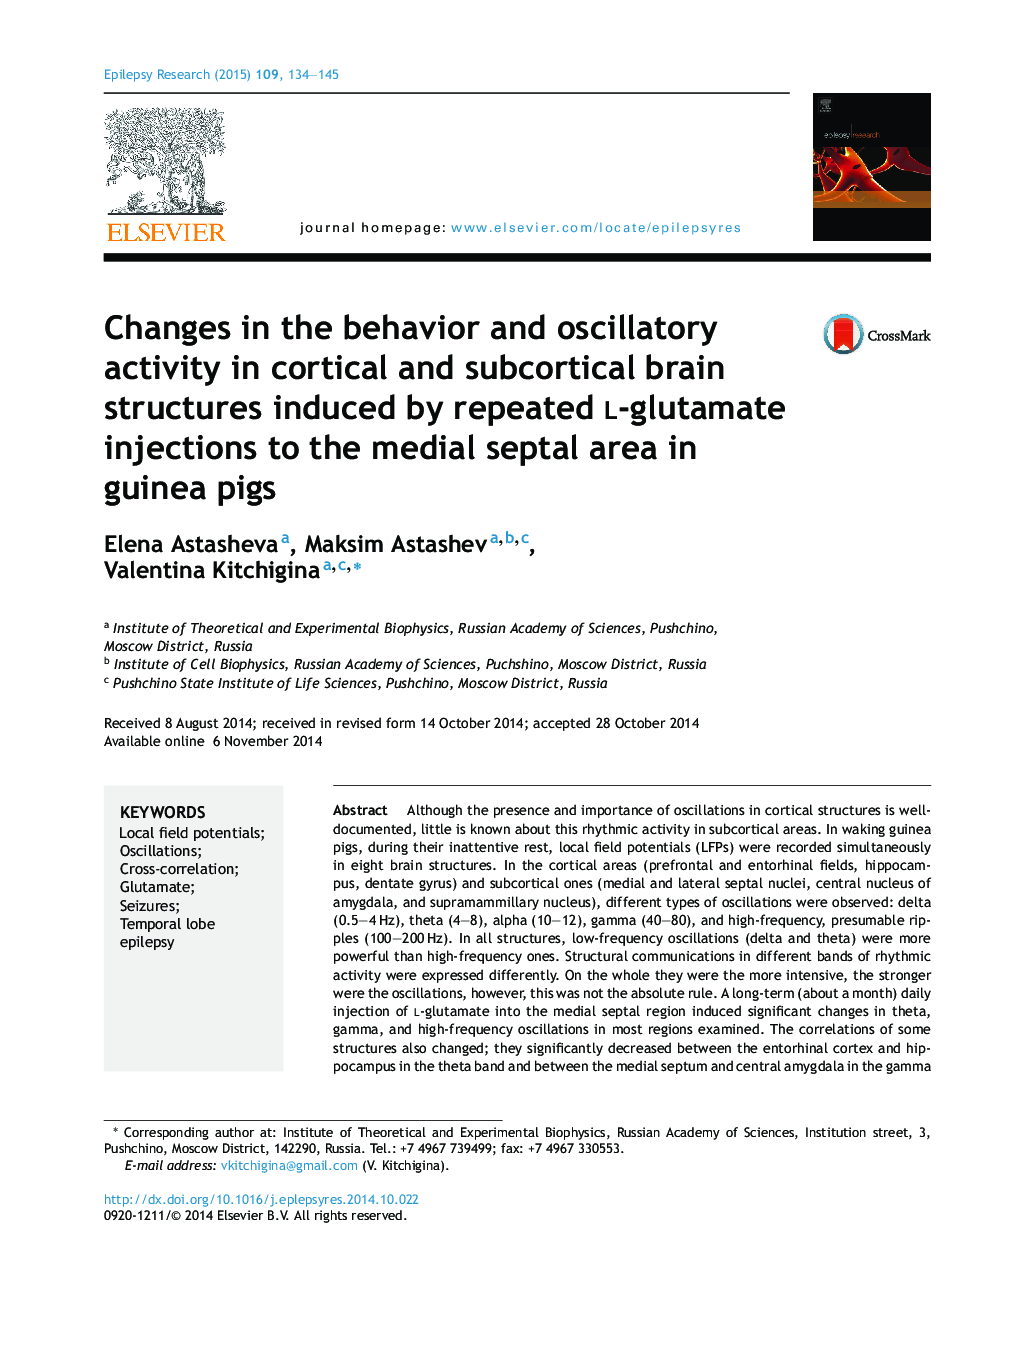 تغییرات در رفتار و فعالیت های نوسان در ساختار مغزی قشر و زیرکوریته ناشی از تزریق مکرر ال گلوتامات به ناحیه سپتوم مدیال در خوکچه های دریایی 